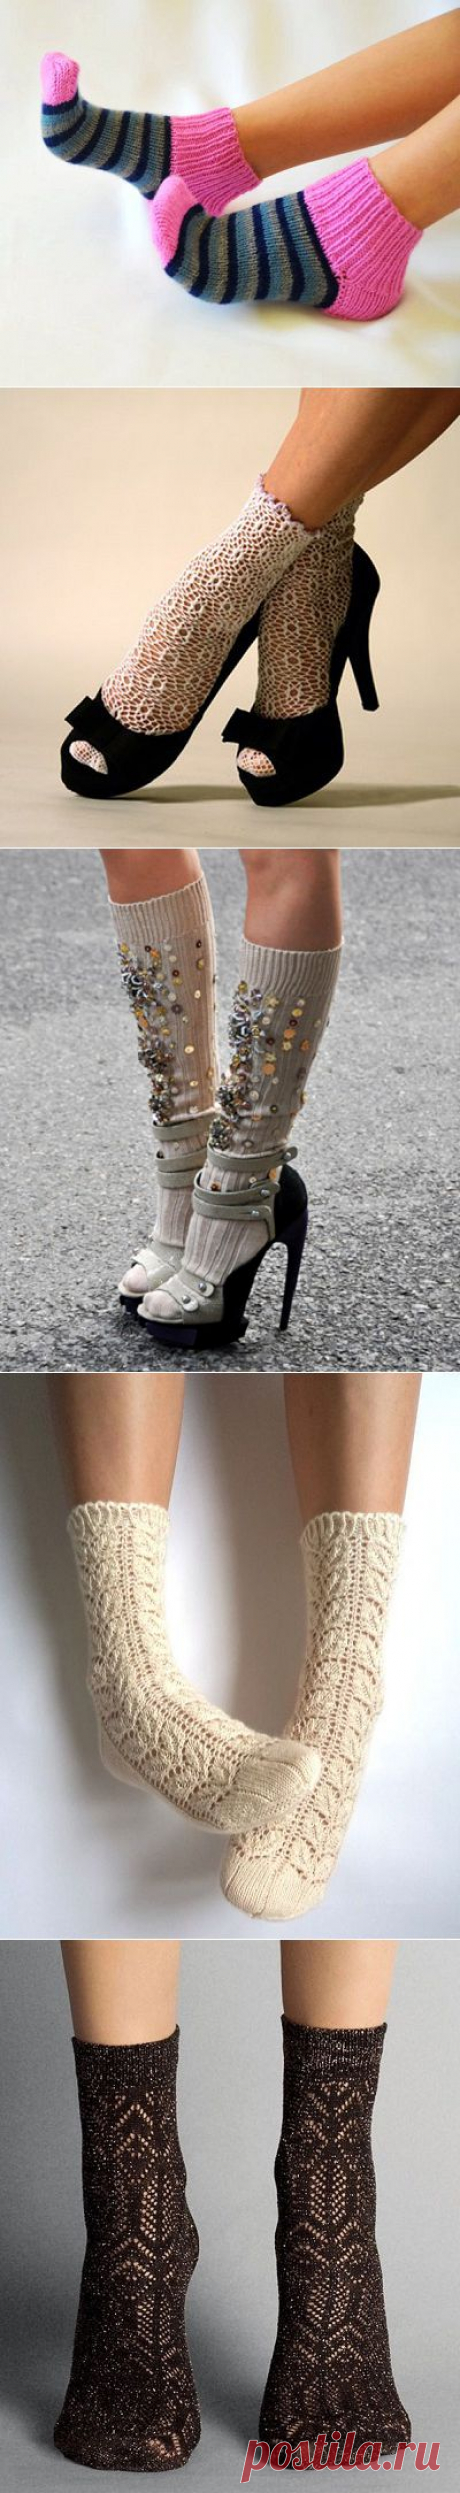 Красивые вязаные носки - модный аксессуар гардероба | Вяжем с Lana Vi